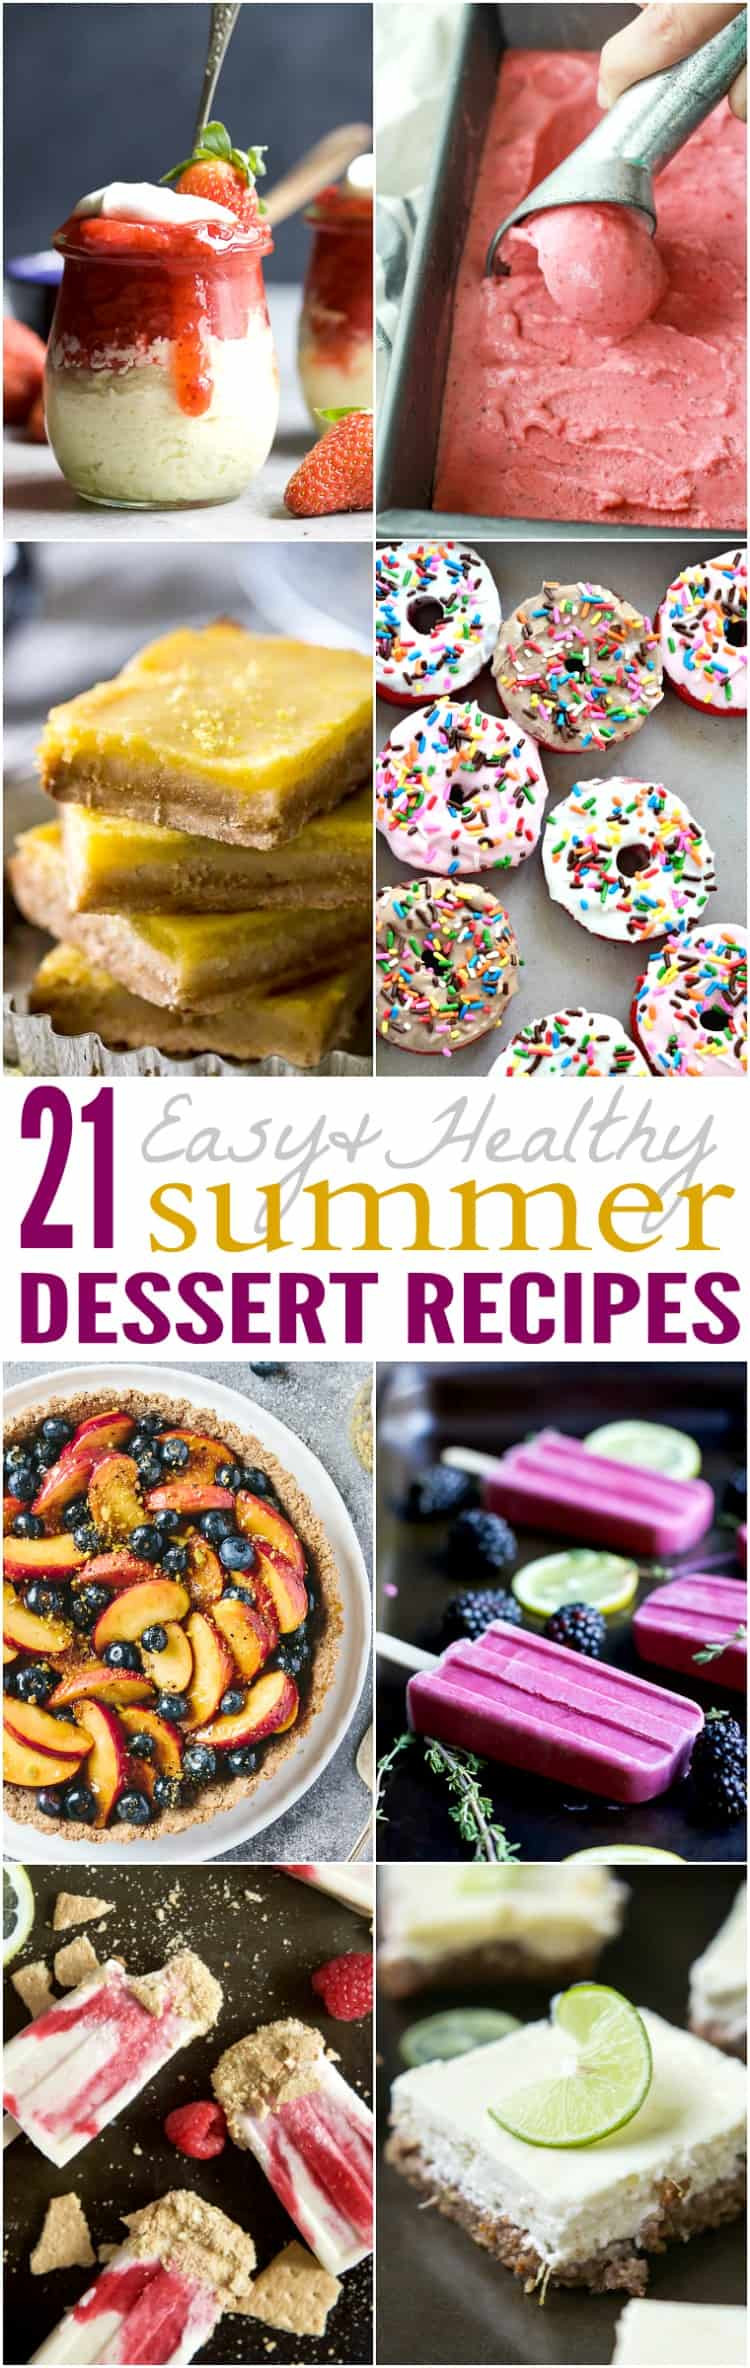 Easy Summer Dessert Recipes
 21 Easy & Healthy Summer Dessert Recipes